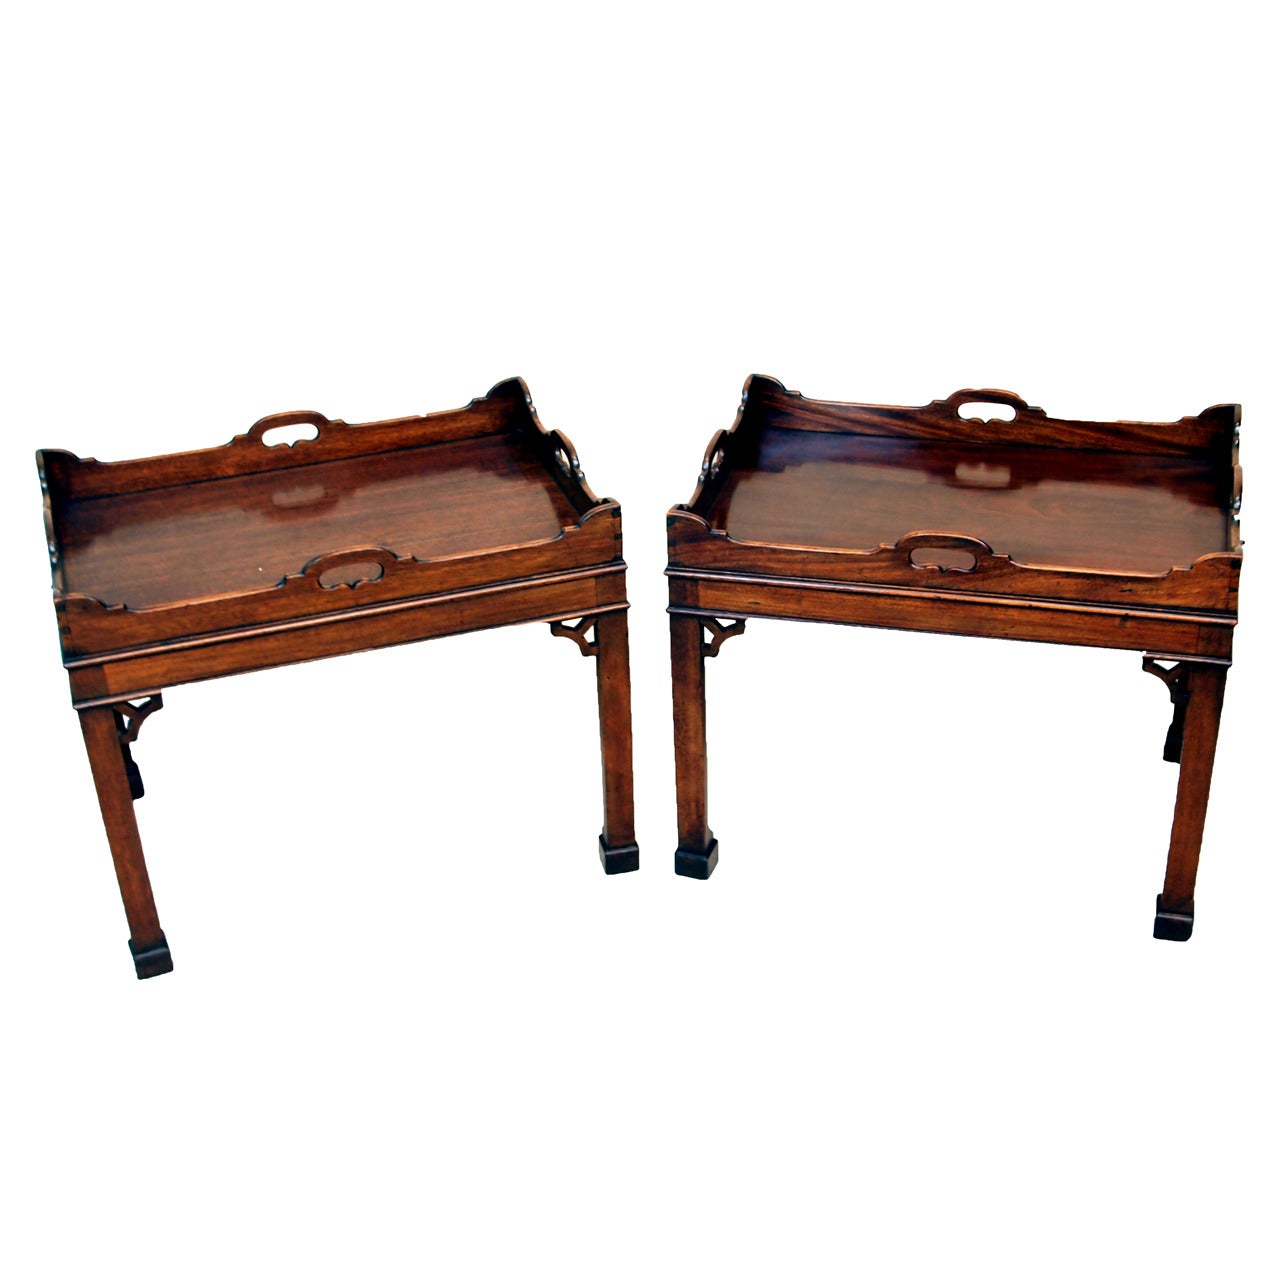 Antique Pair of Mahogany Tray Tables